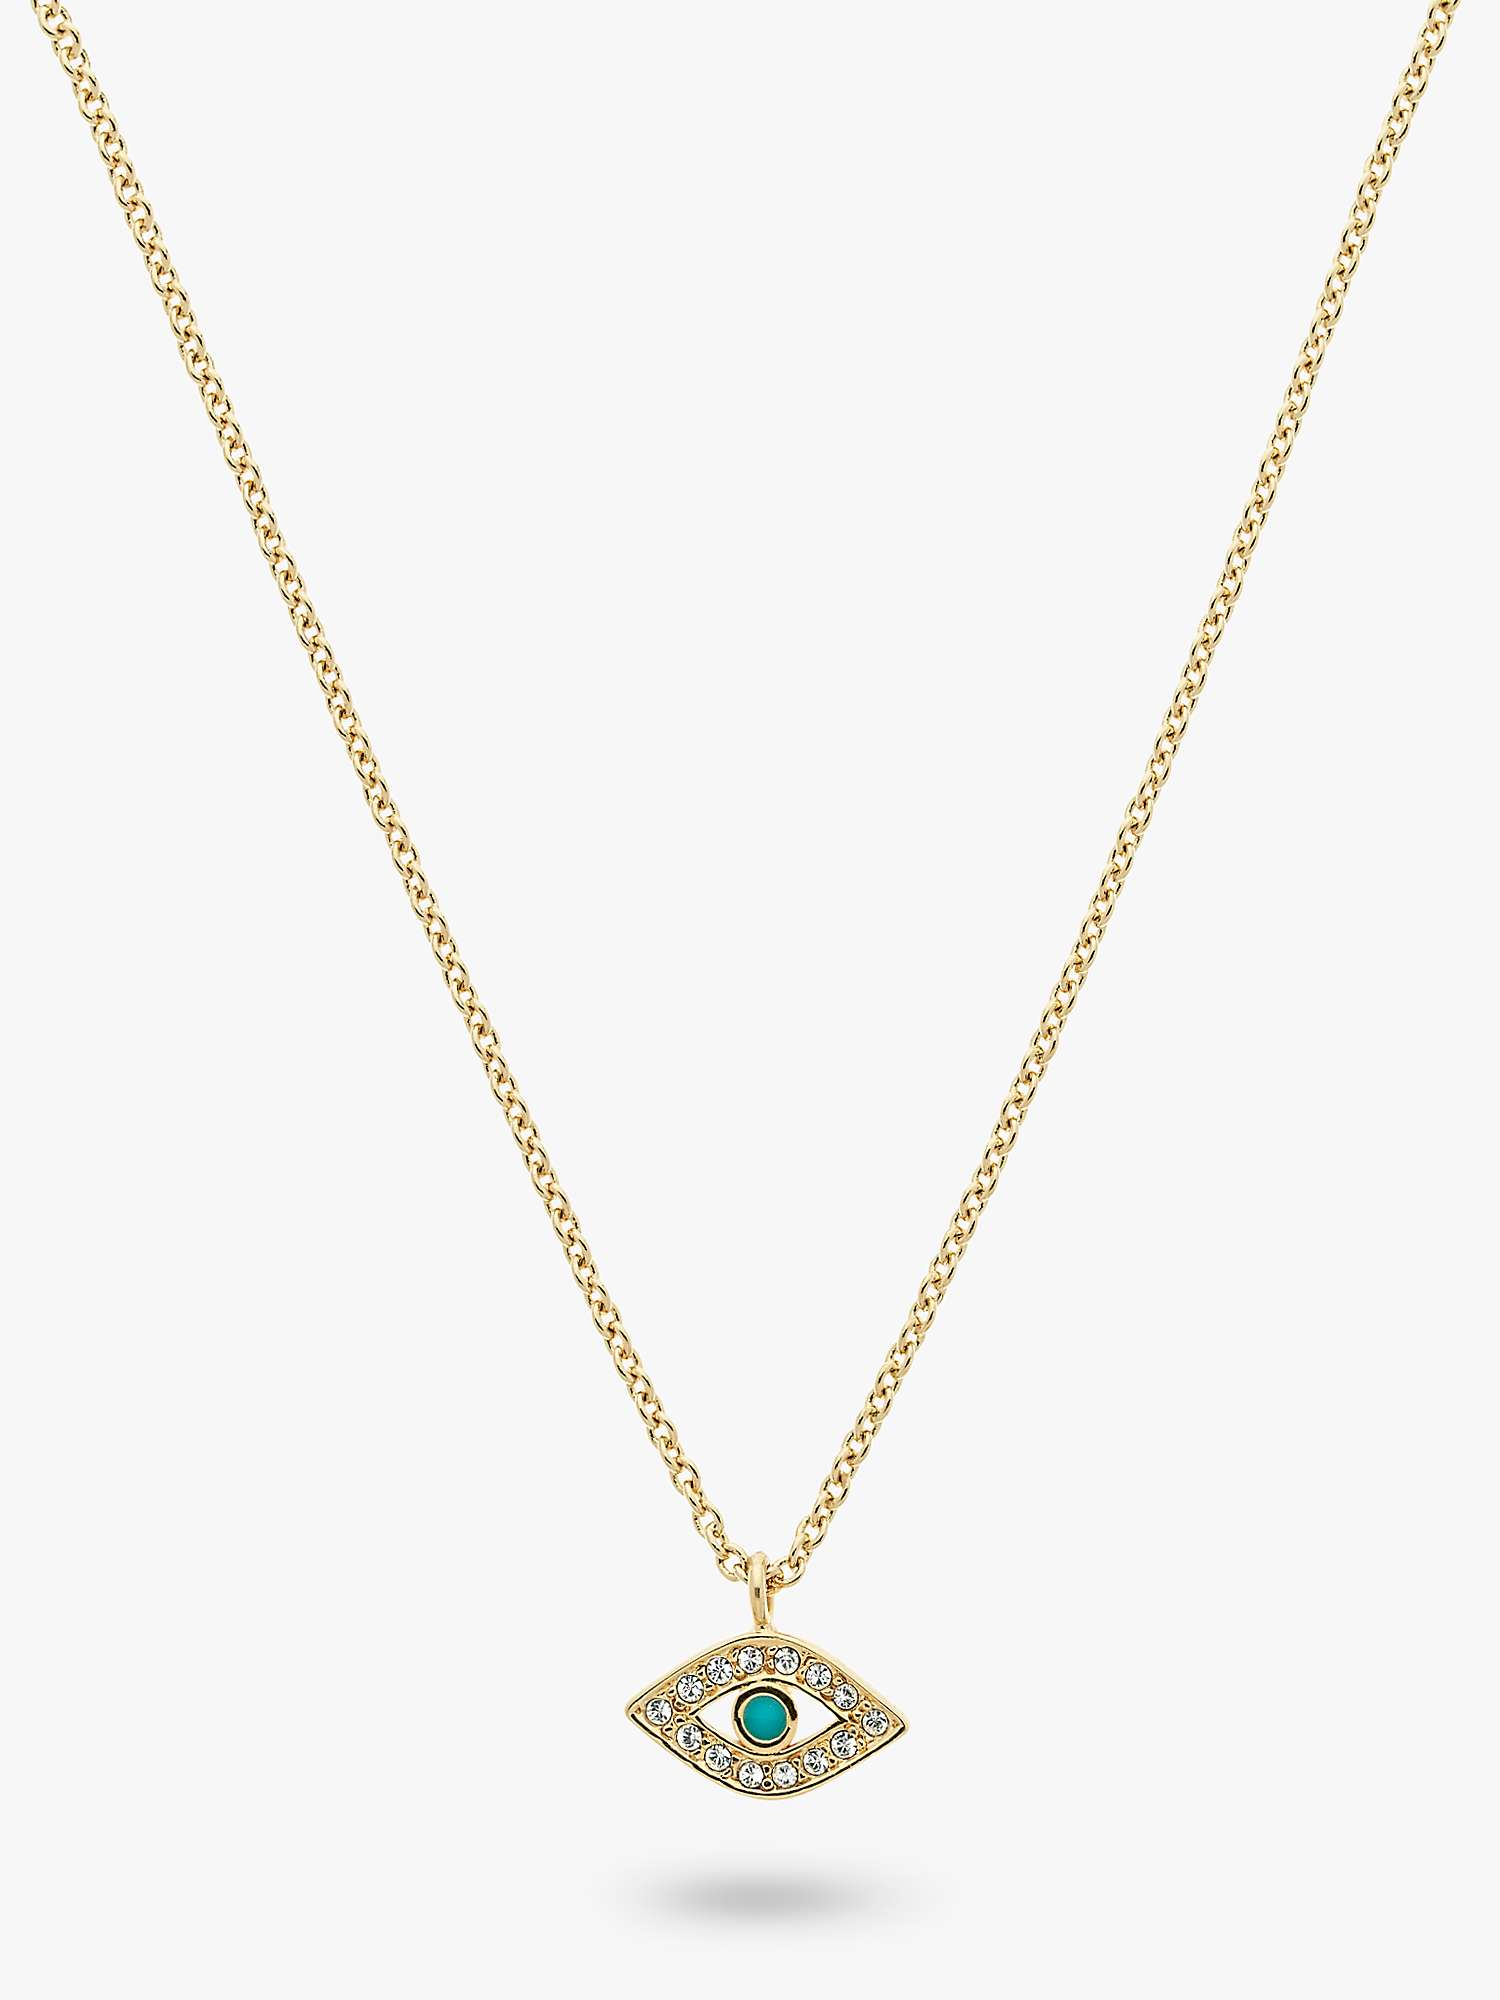 Buy Melissa Odabash Crystal Eye Pendant Necklace Online at johnlewis.com